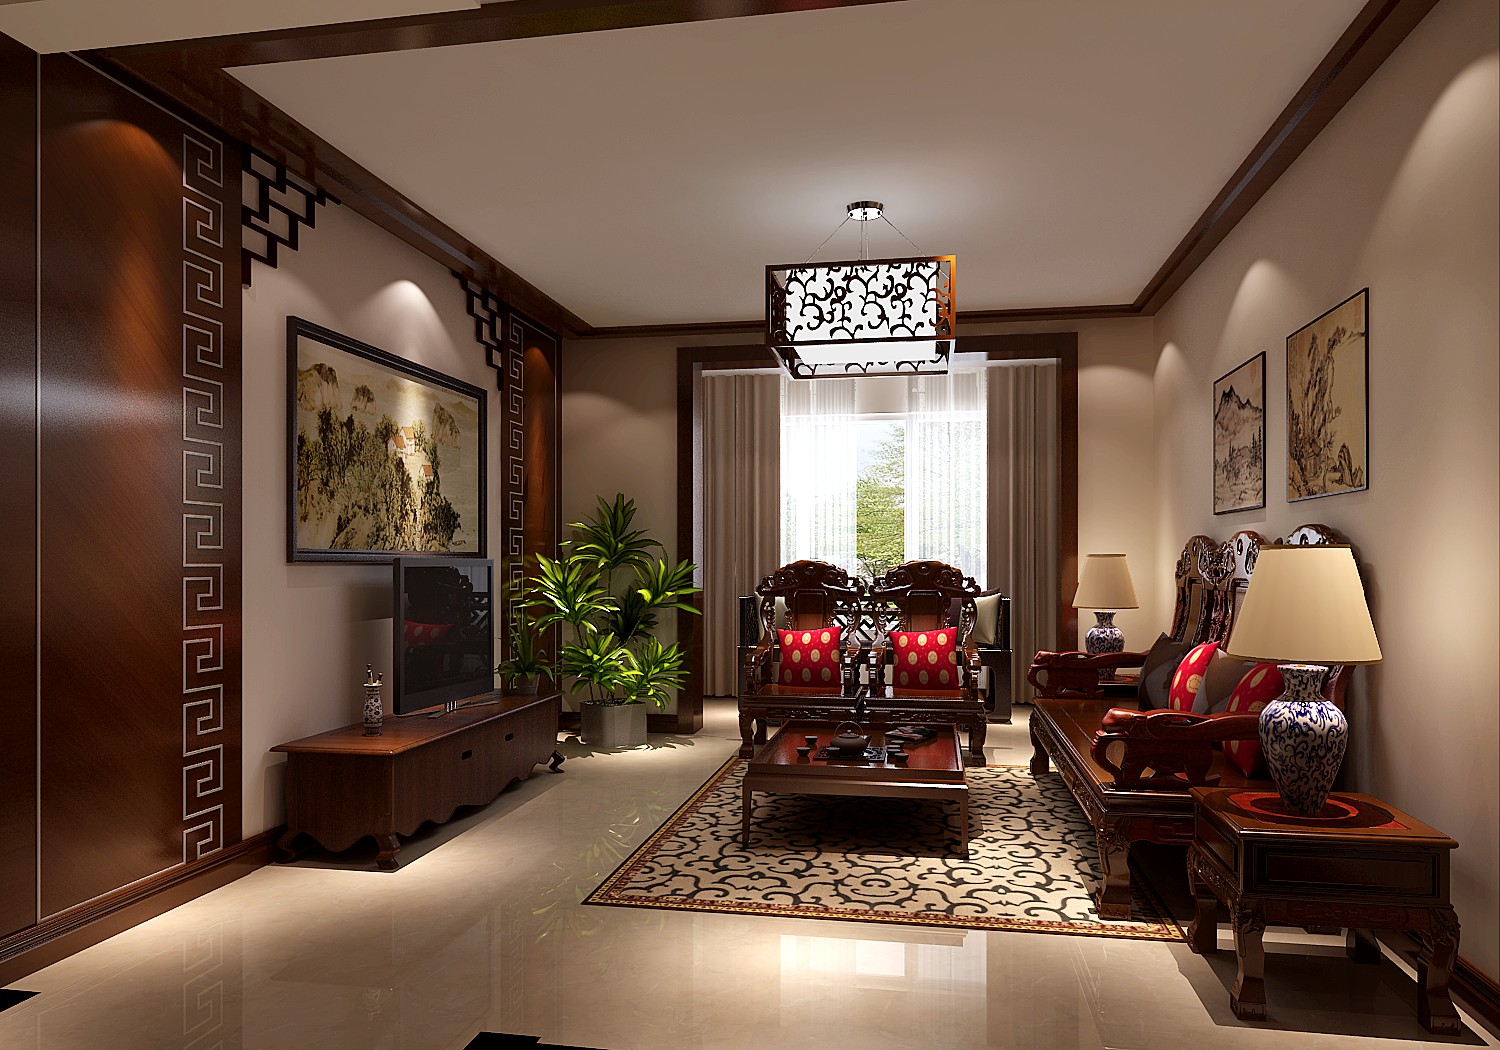 中式 新古典 传统风格 复古 中国韵味 二居 收纳 实用 定制家具 客厅图片来自成都高度国际在100㎡——中式风格——花园洋房的分享